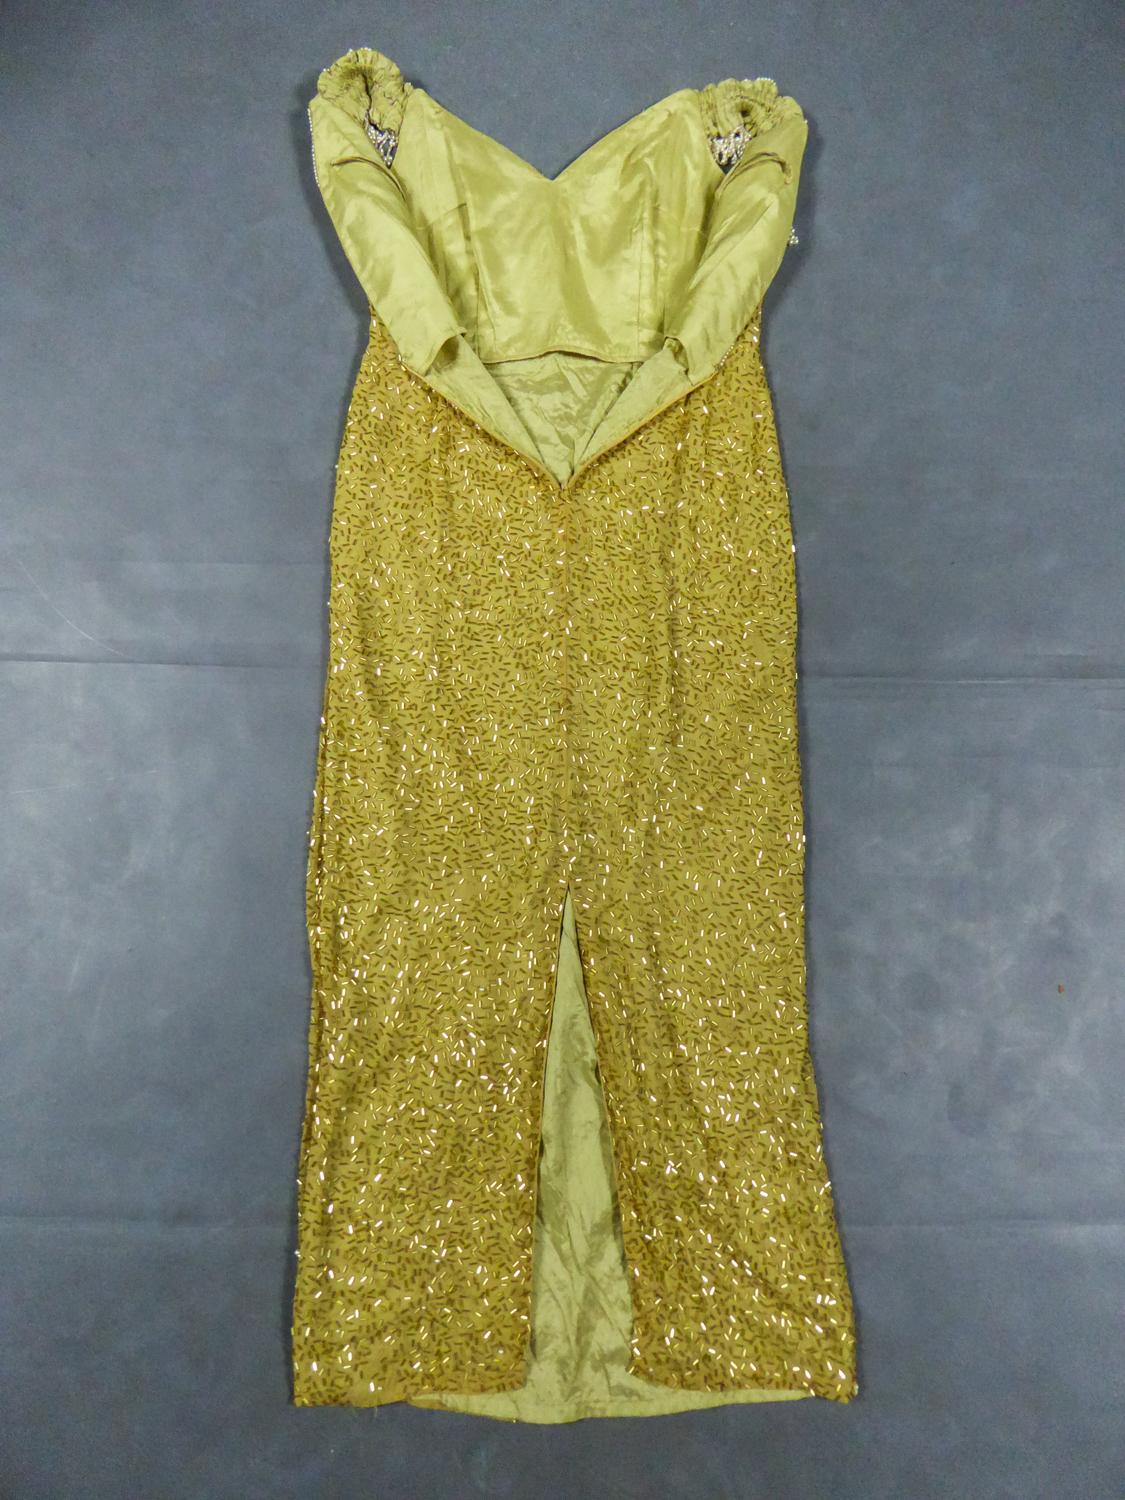 CIRCA 1980/1990
Frankreich

Wunderschönes langes Abend- oder Showkleid aus strohgelbem Seidenmusselin, vollständig bestickt mit goldenen Röhrenperlen und Zuchtperlen aus den 1990er Jahren. Bustier mit tiefem Rückenausschnitt, verziert mit Perlen und